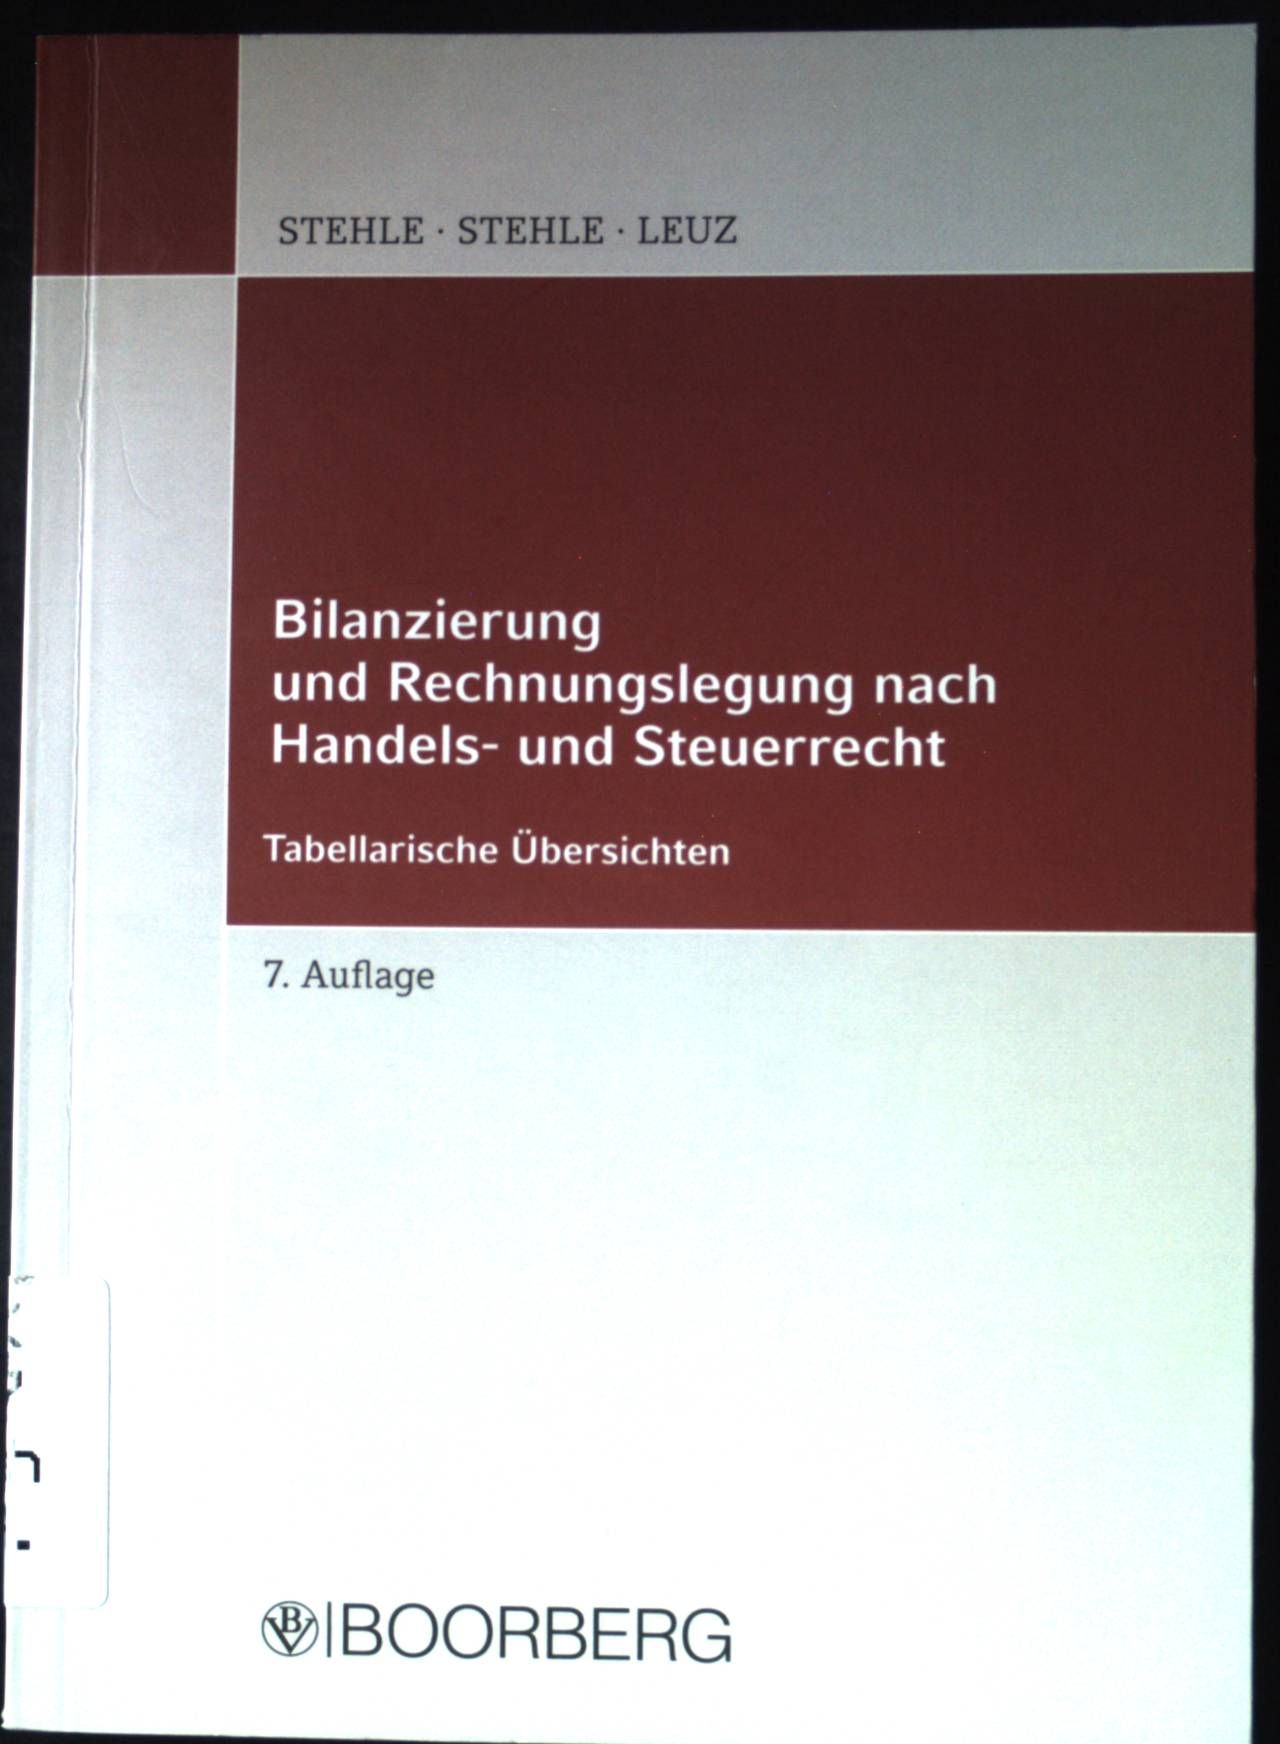 Bilanzierung und Rechnungslegung nach Handels- und Steuerrecht : in tabellarischen Übersichten. - Stehle, Heinz, Anselm Stehle und Norbert Leuz